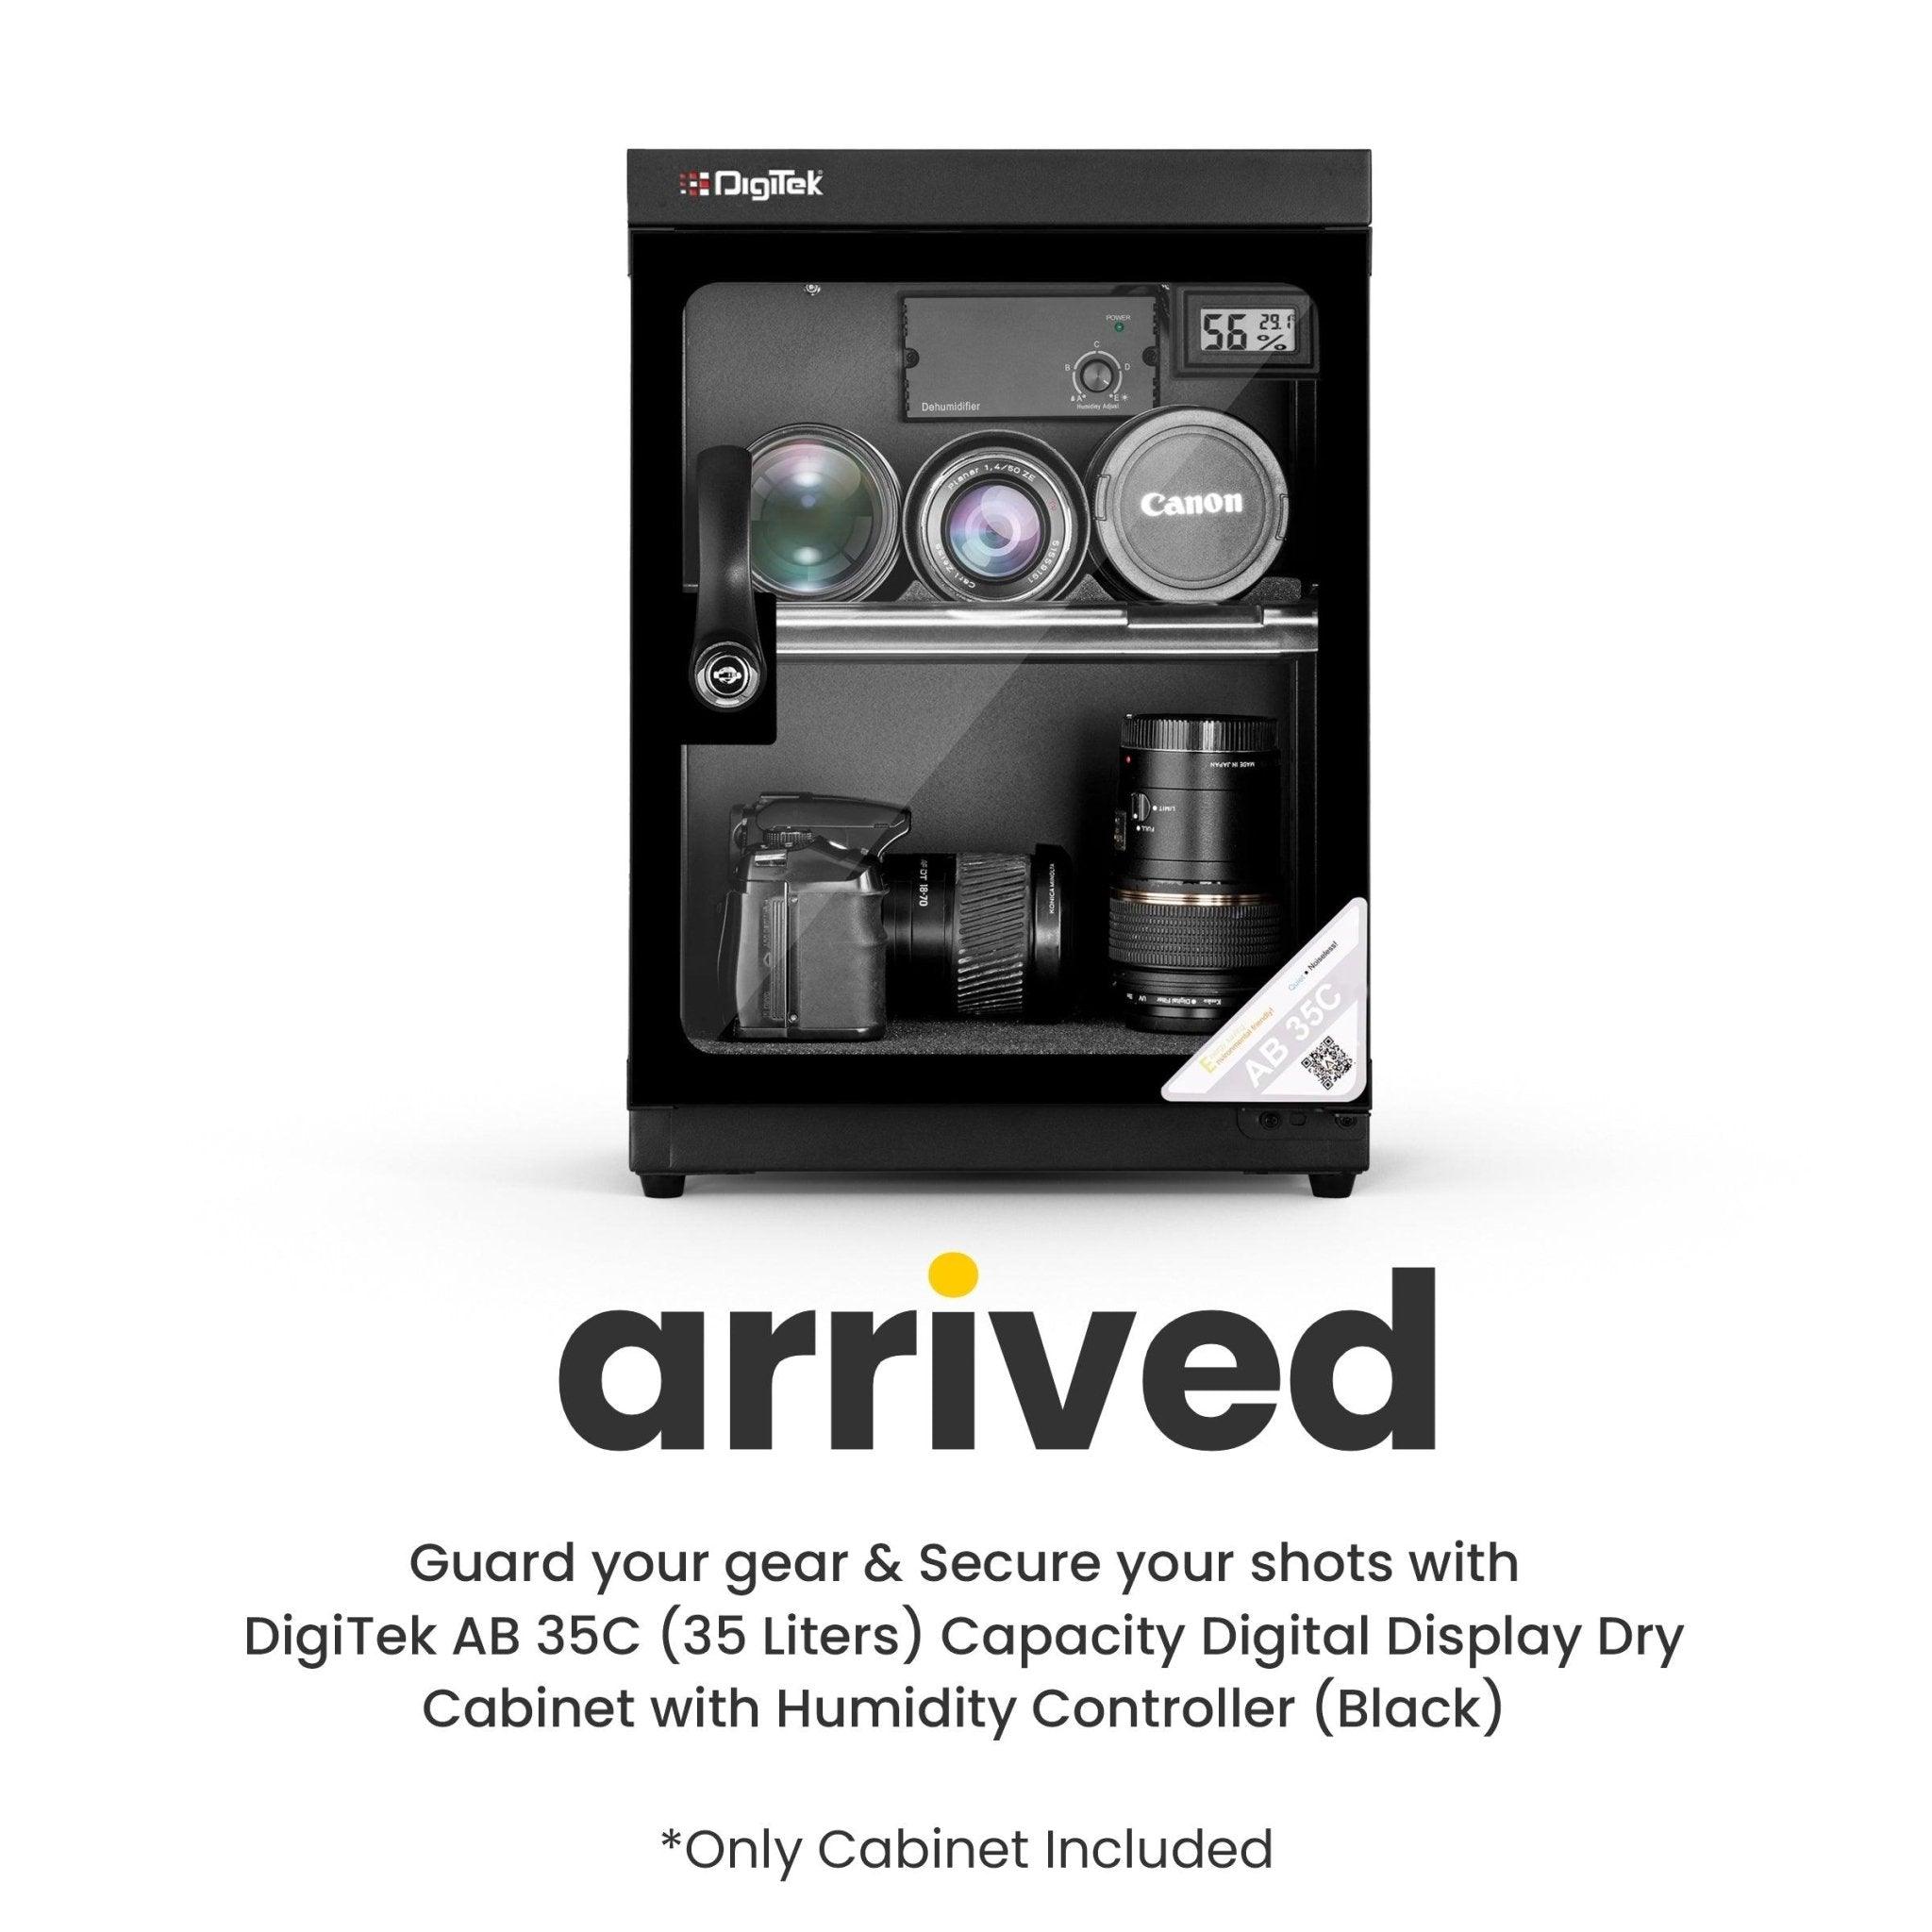 Digitek (AB 35C) 35 Liters Capacity Digital Display Dry Cabinet with Humidity Controller (Black) - Digitek